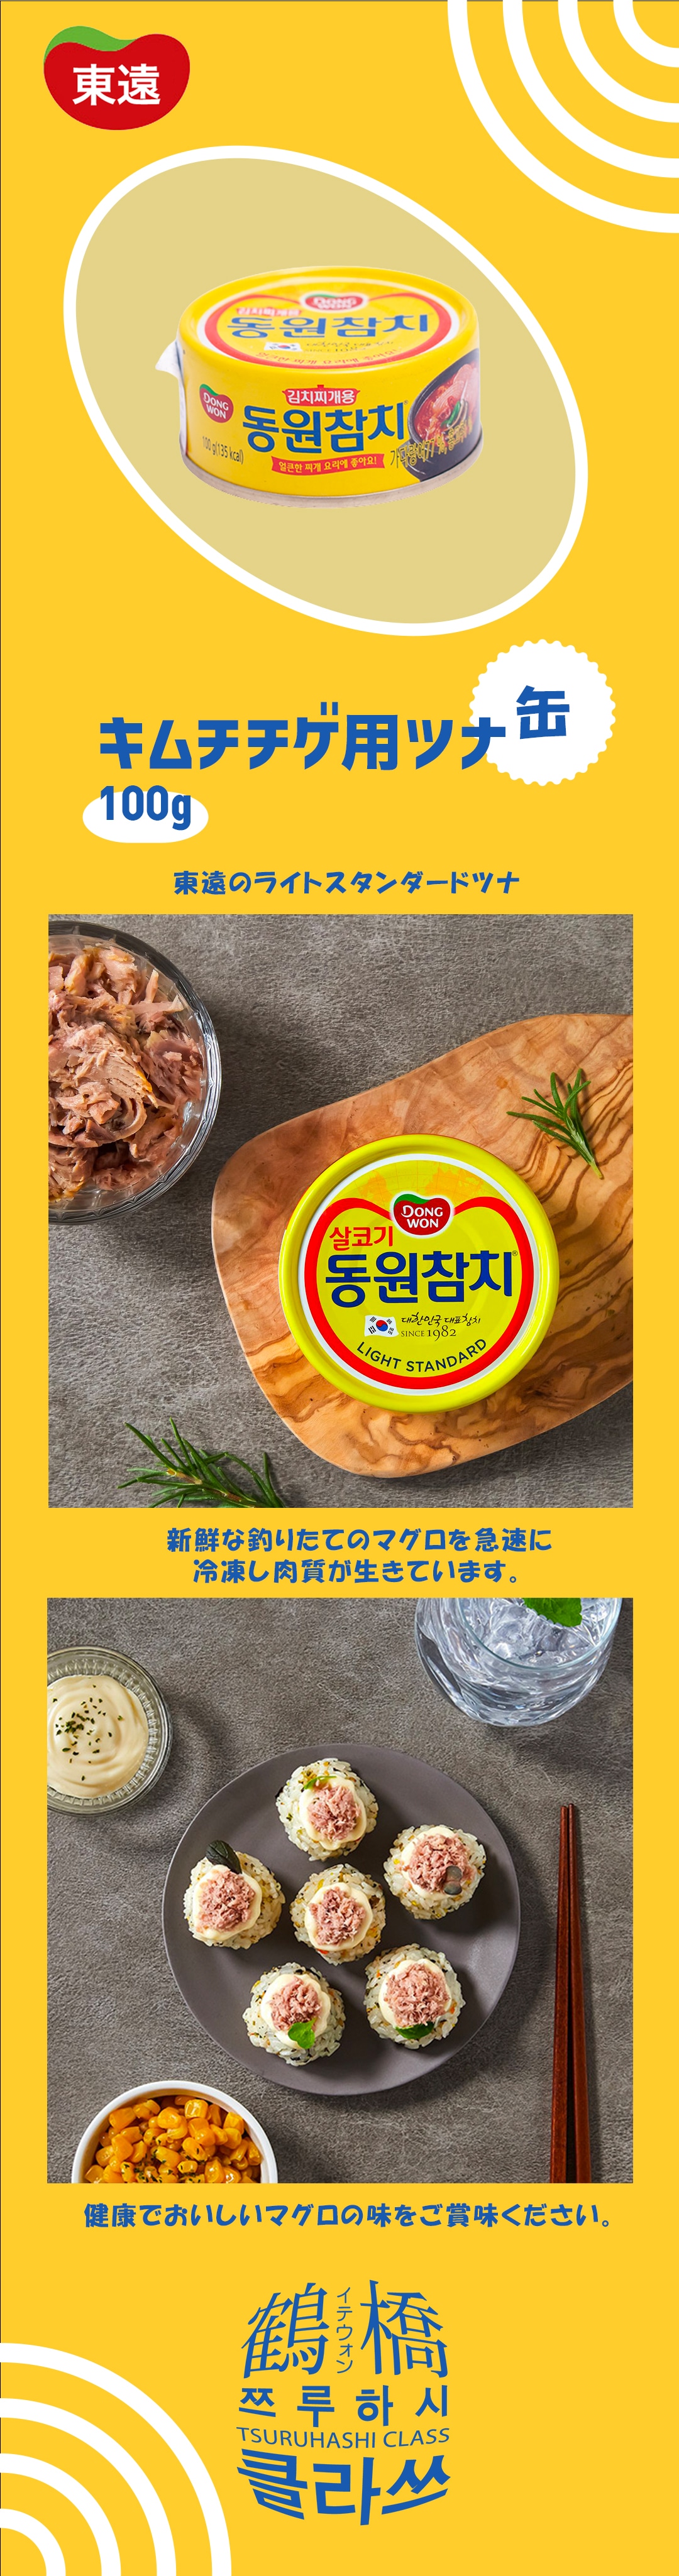 鶴橋クラスの通販 | 東遠 キムチチゲ用ツナ[缶] 100g | 韓国の調味料 | 鶴橋クラス